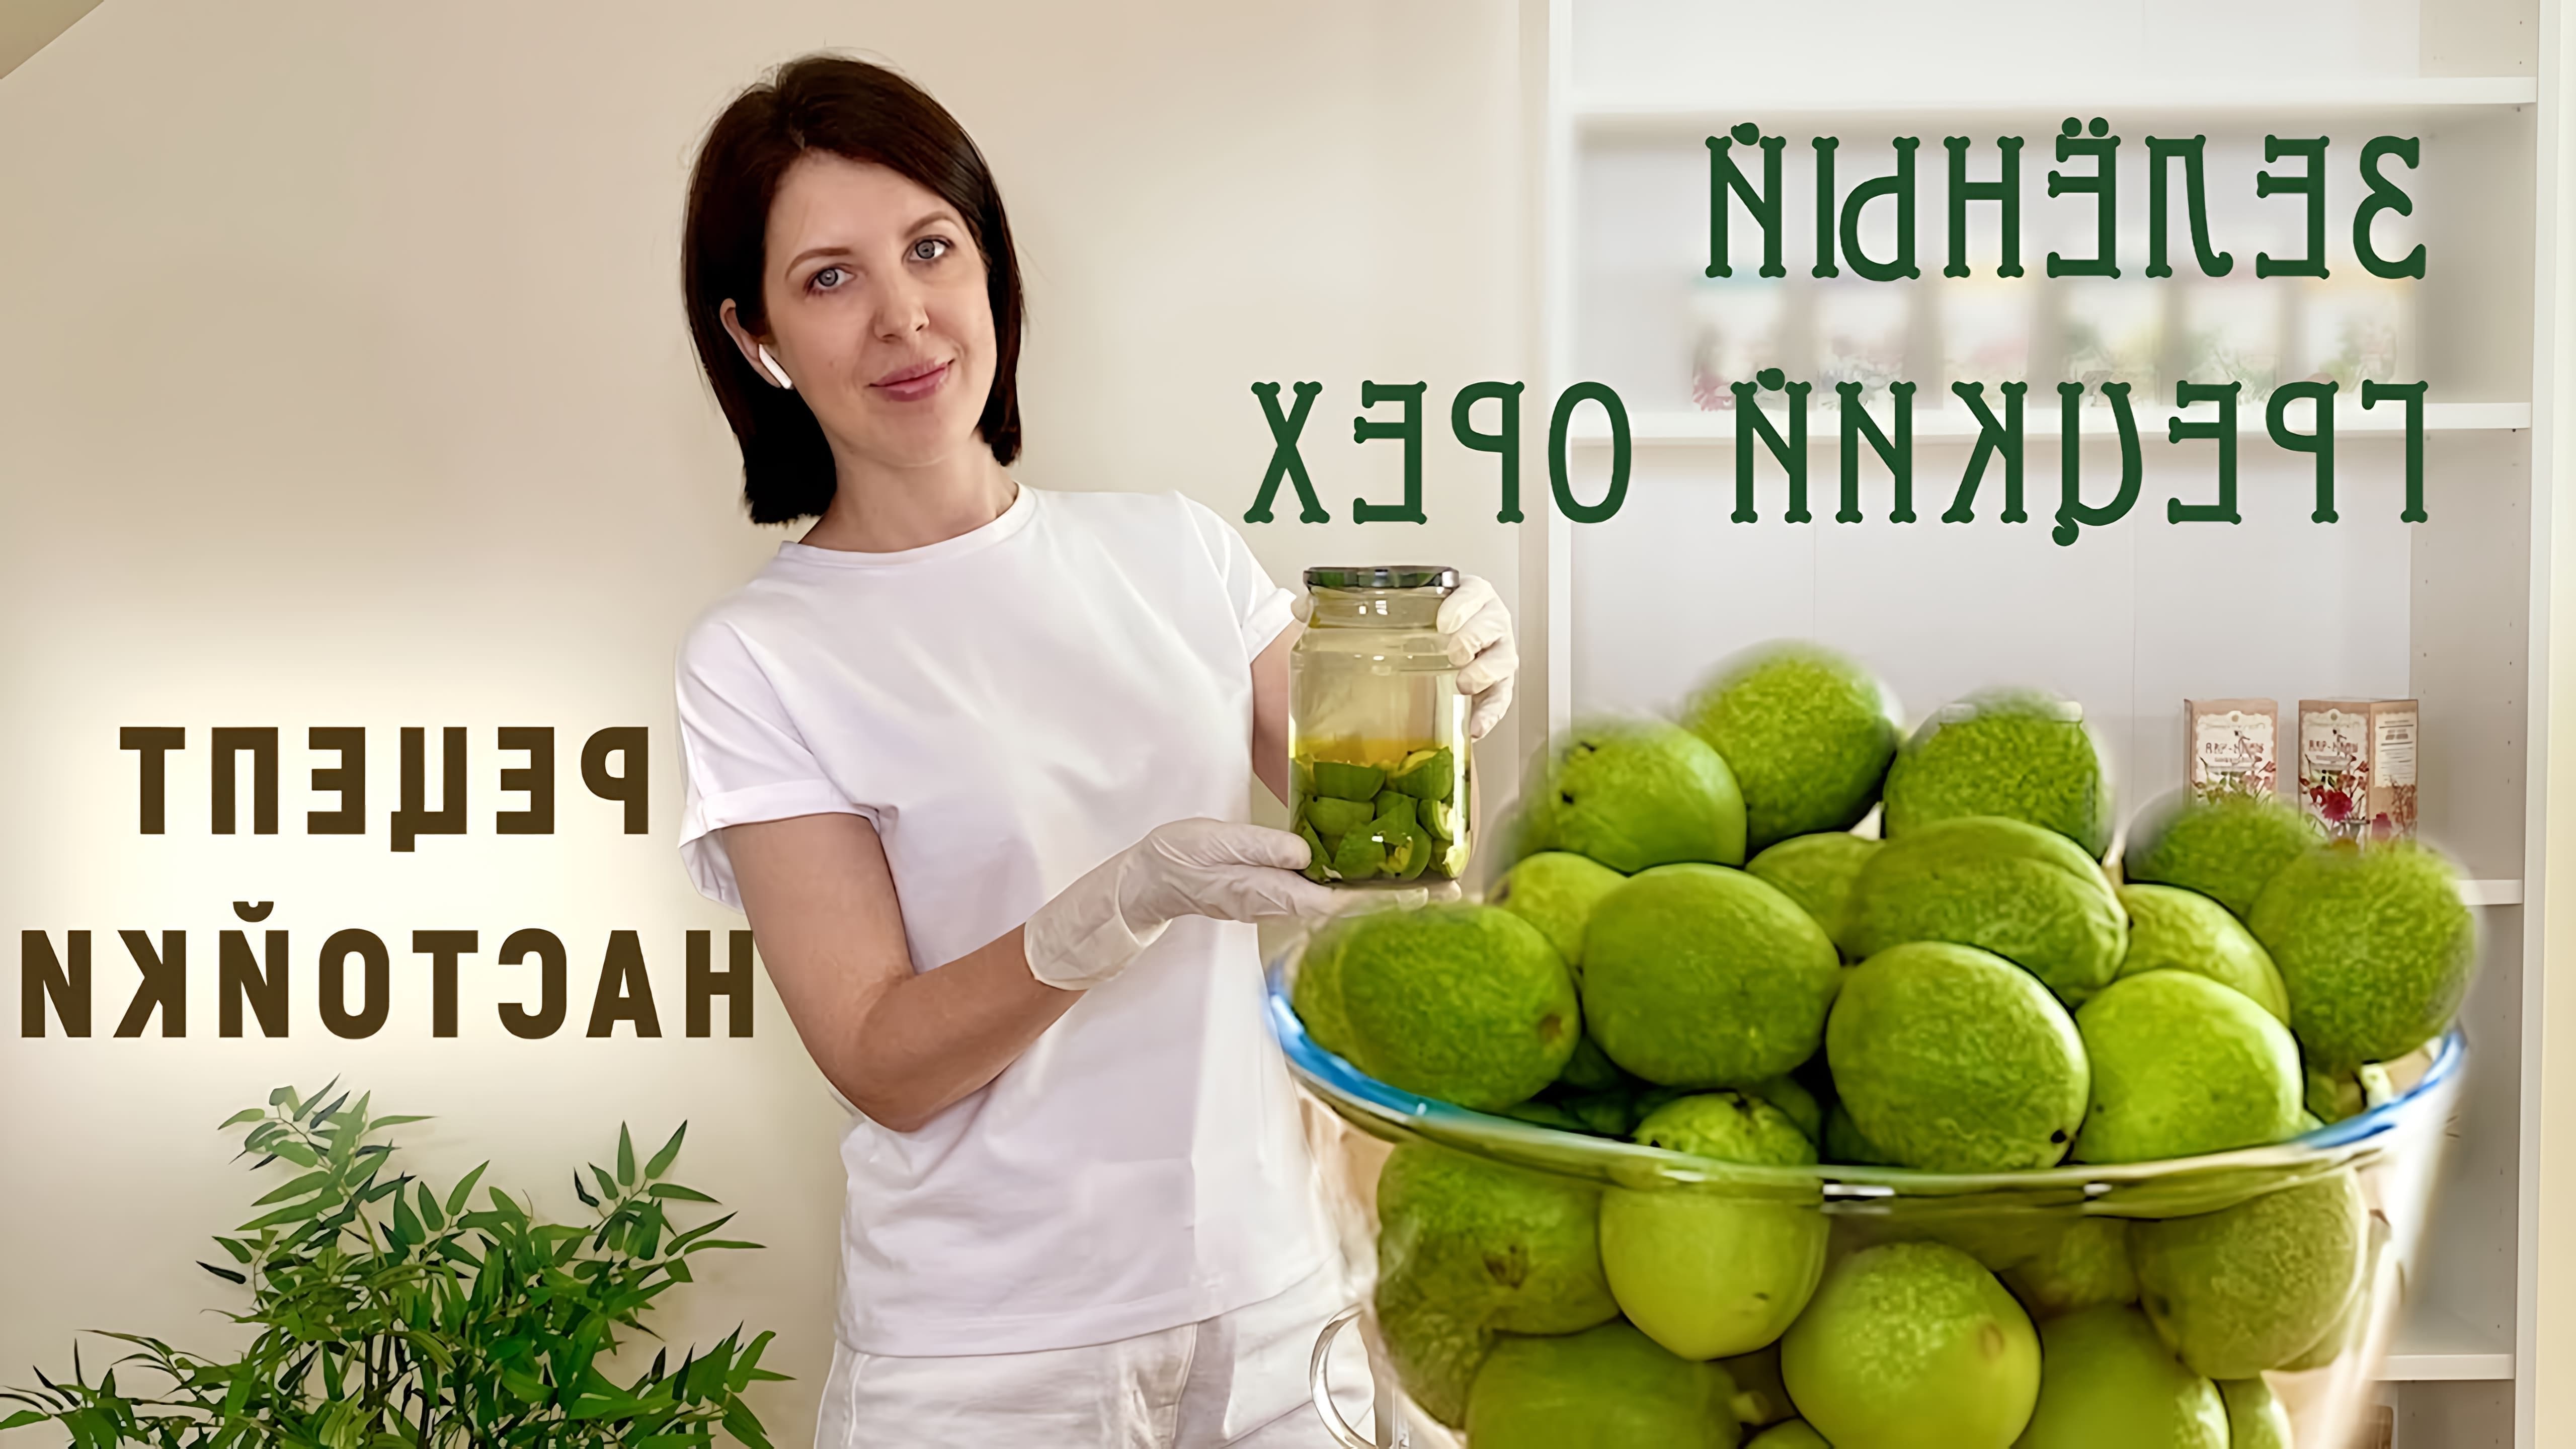 В данном видео рассказывается о рецепте настойки из зелёного грецкого ореха